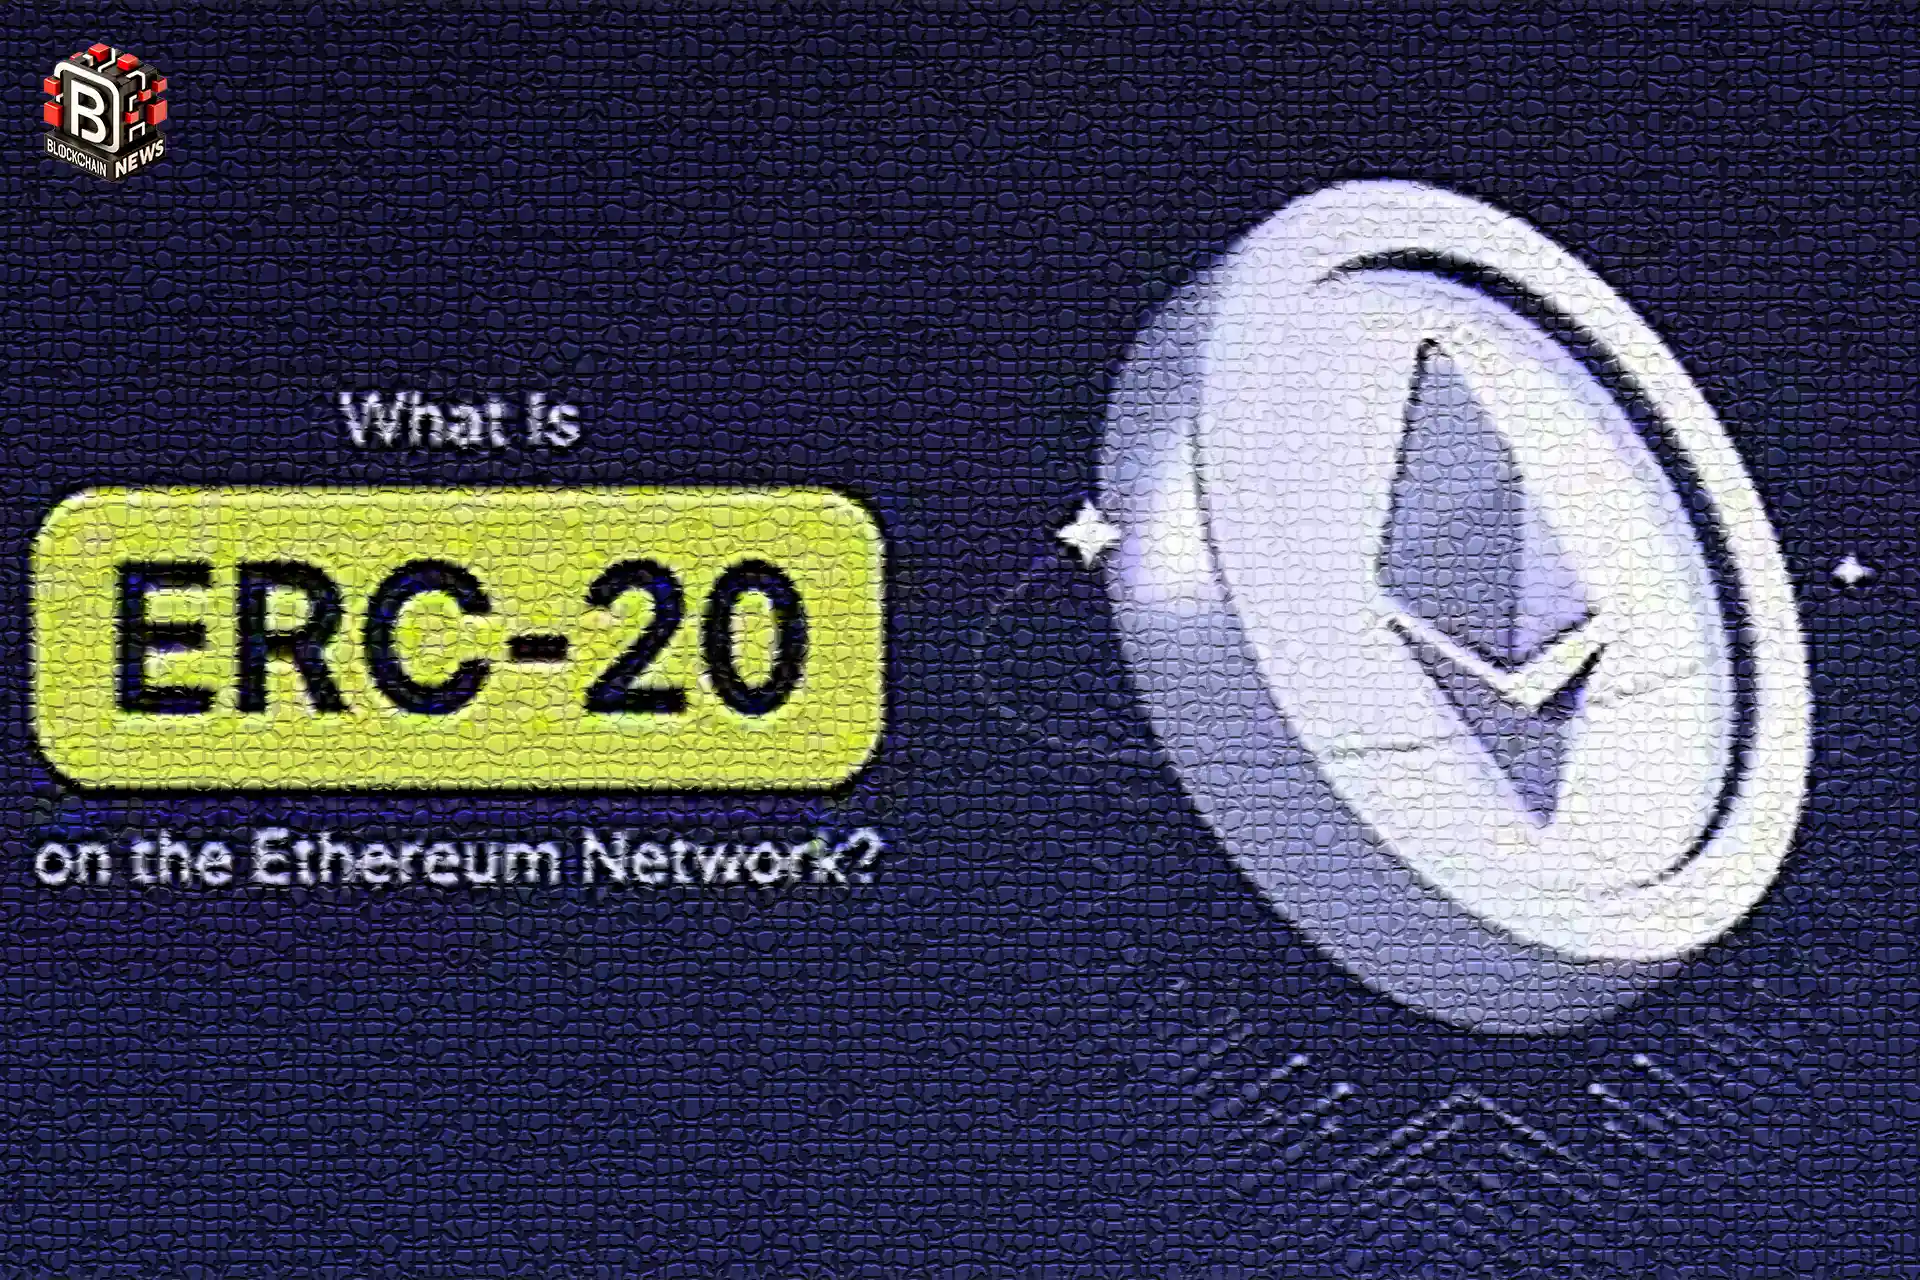 Ethereum-erc20-network